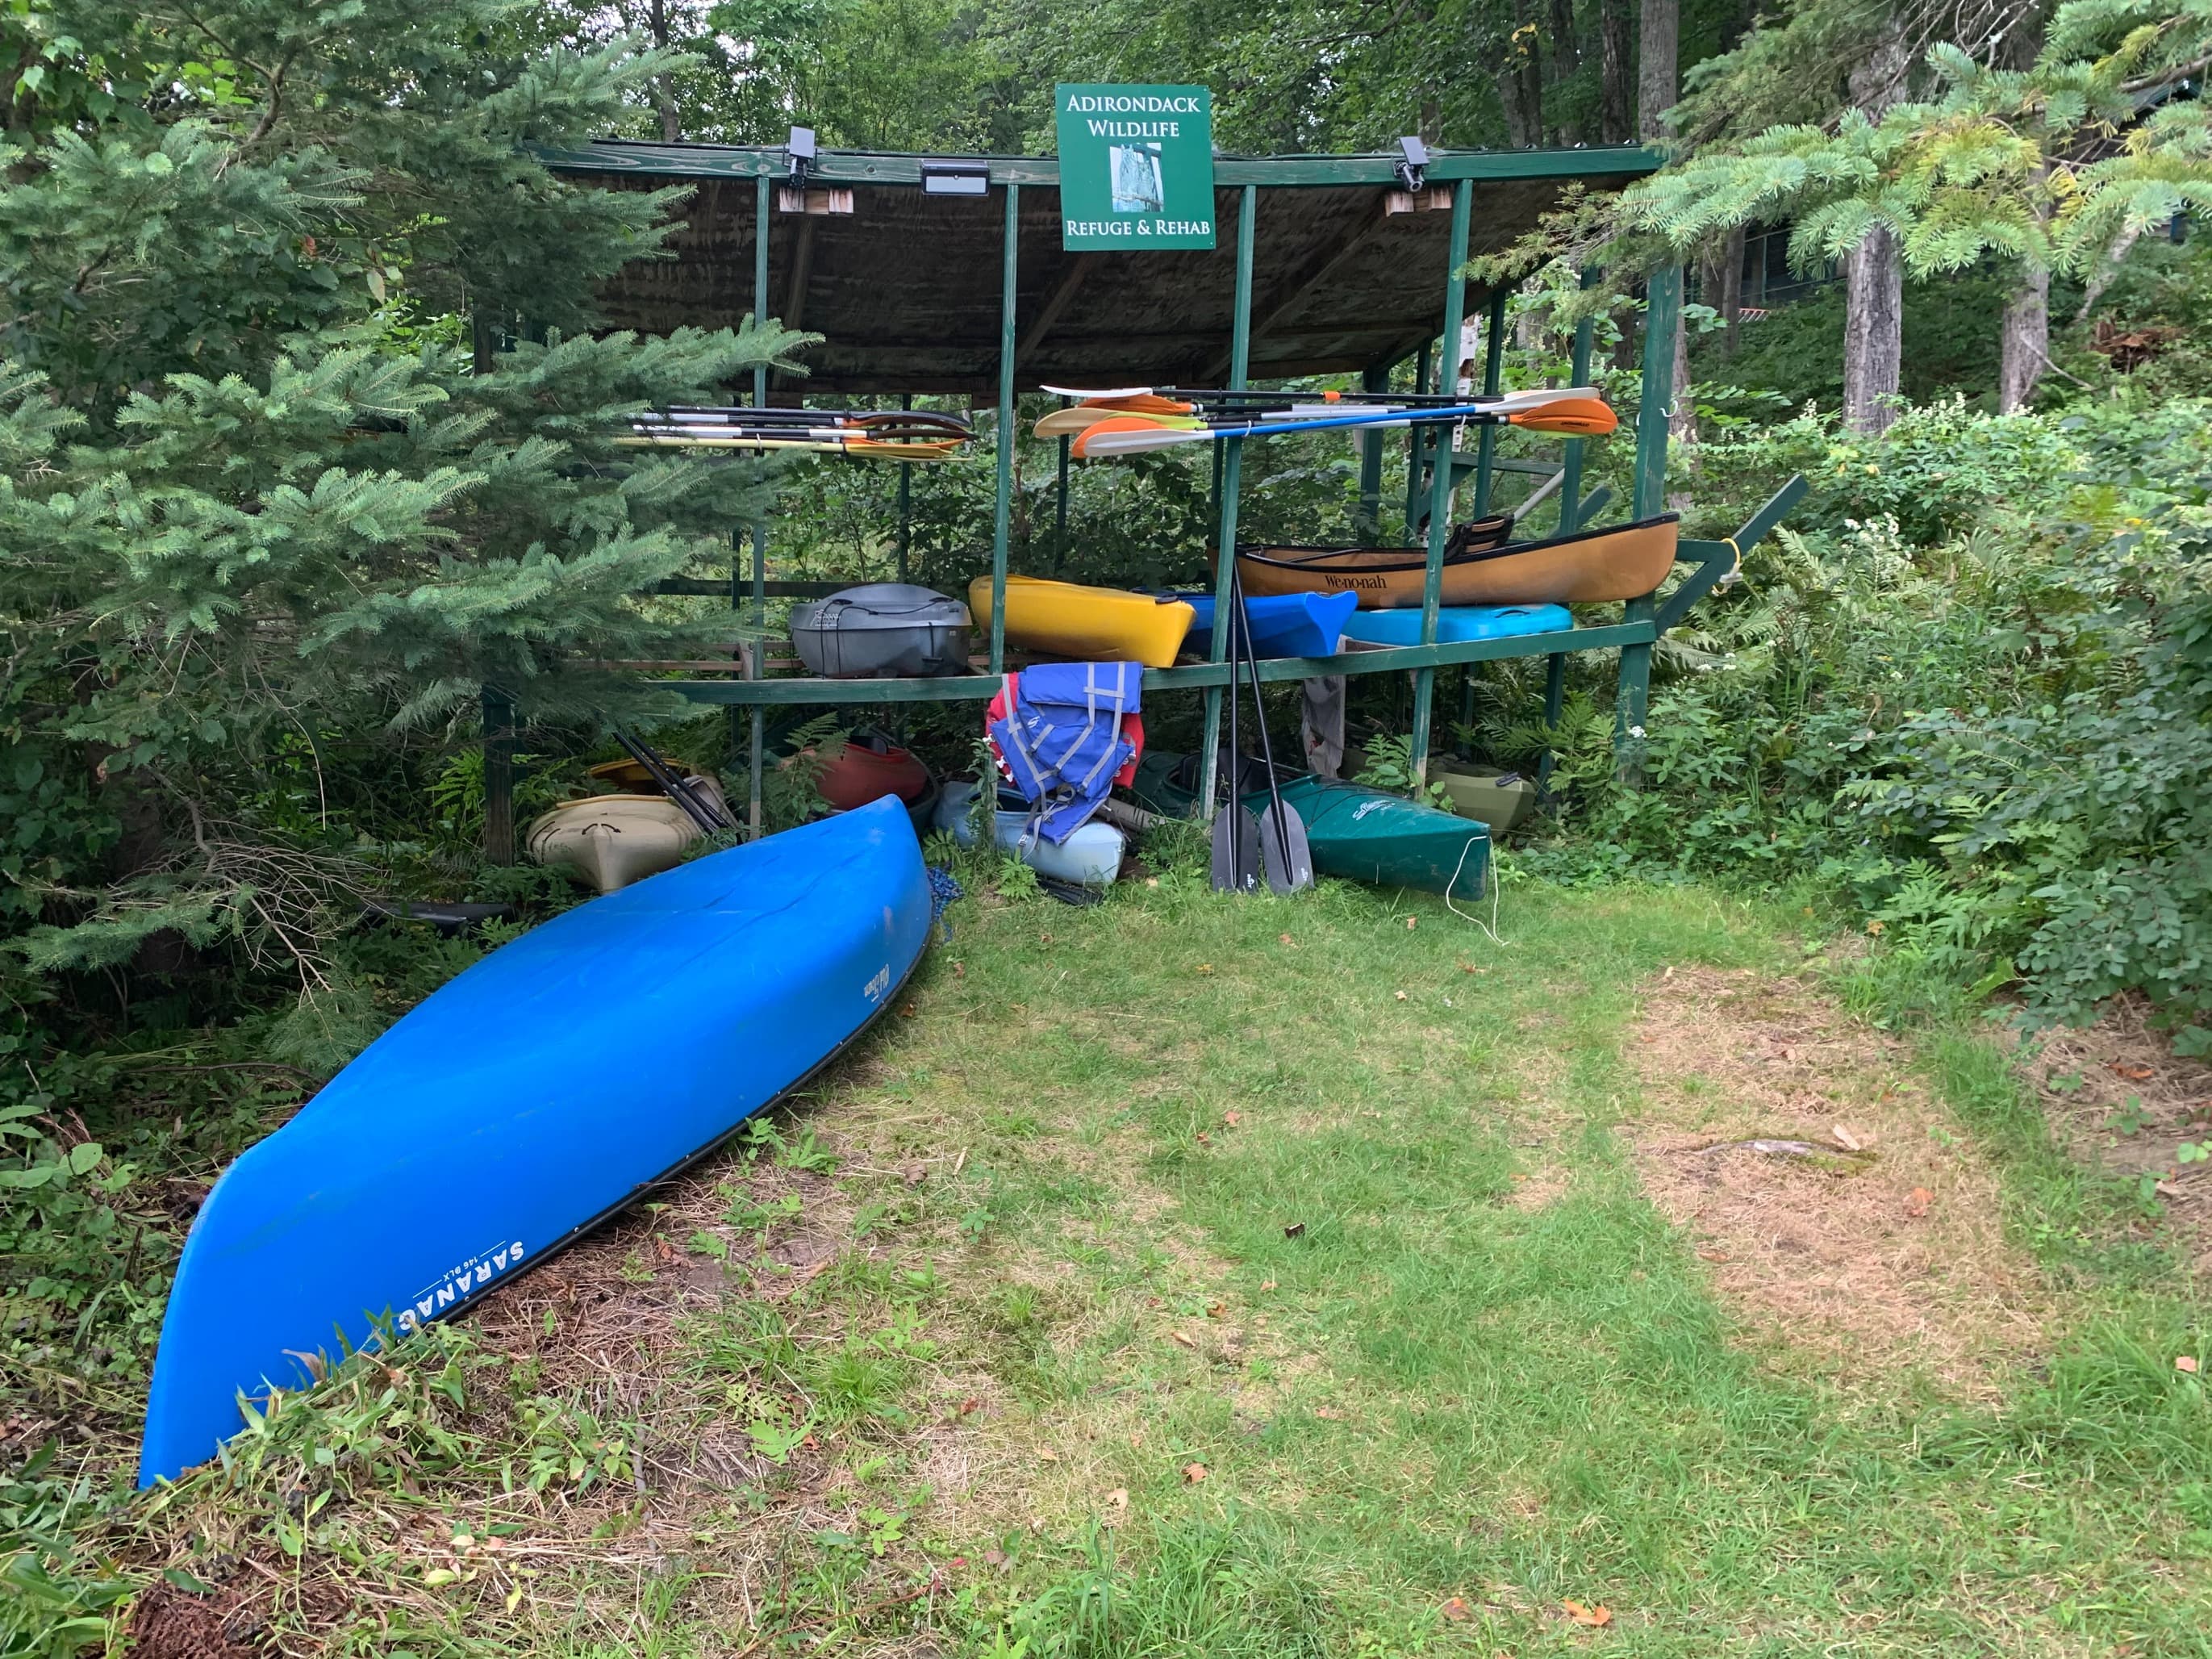 25.	Canoe and Kayak rack at Adirondack Wildlife Refuge.